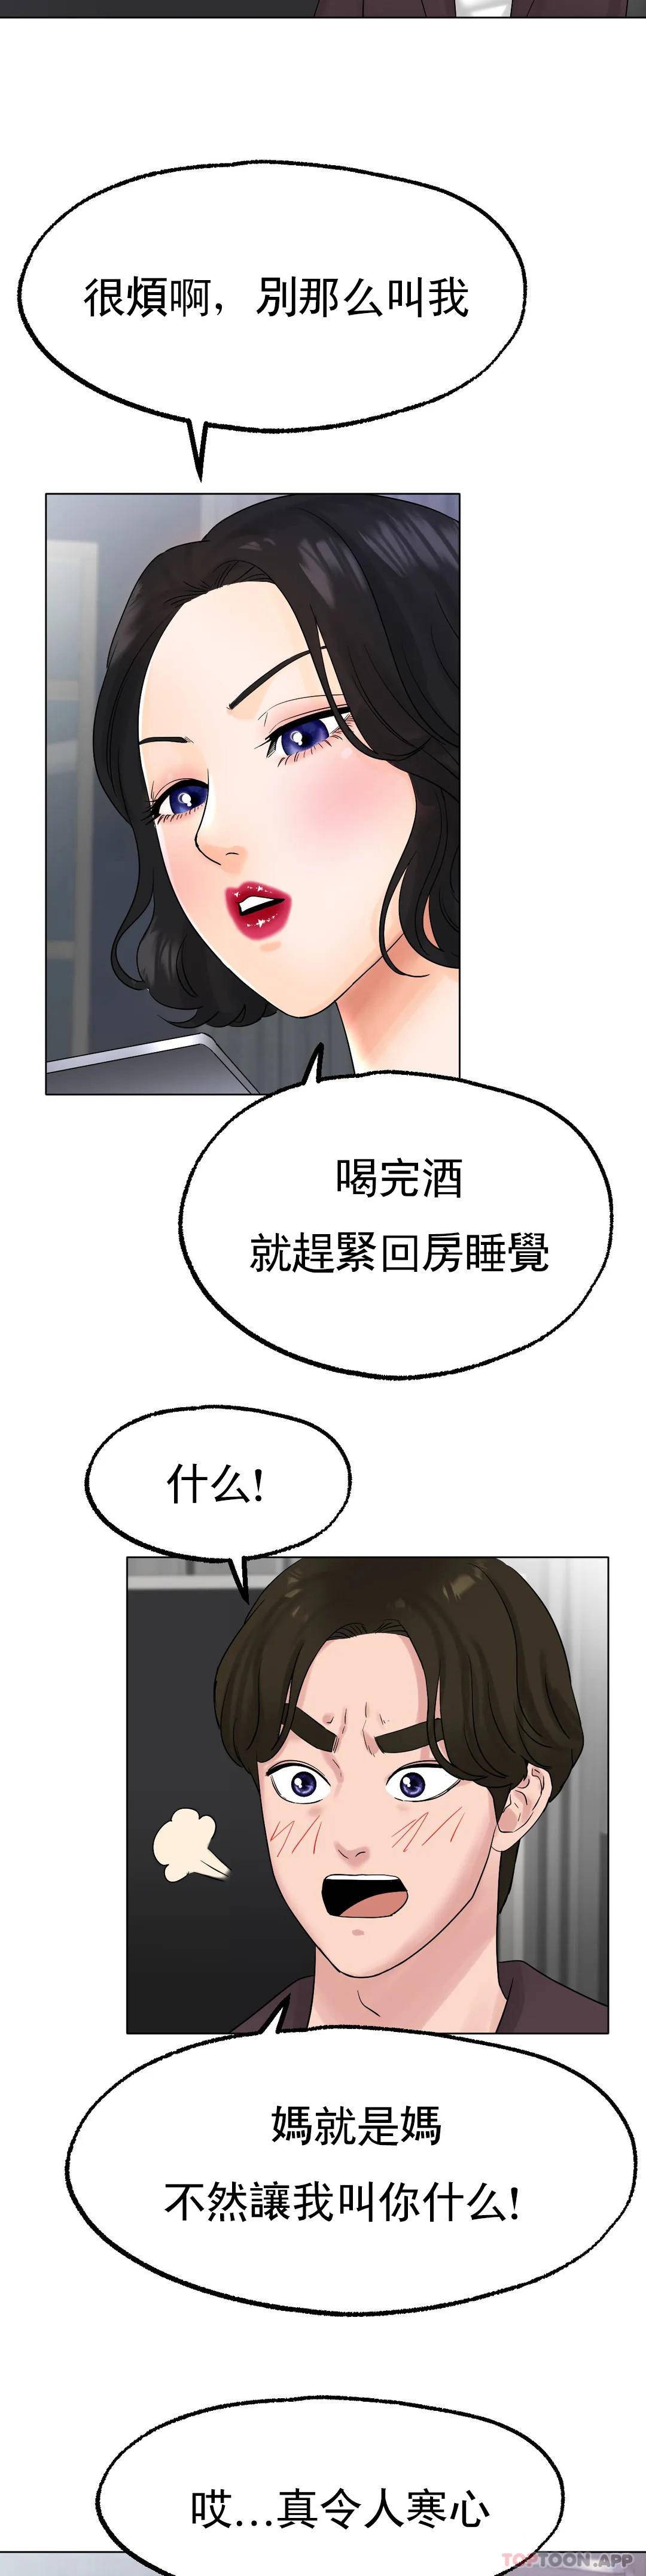 韩国污漫画 冰上的愛 第12话喜欢你呗 32